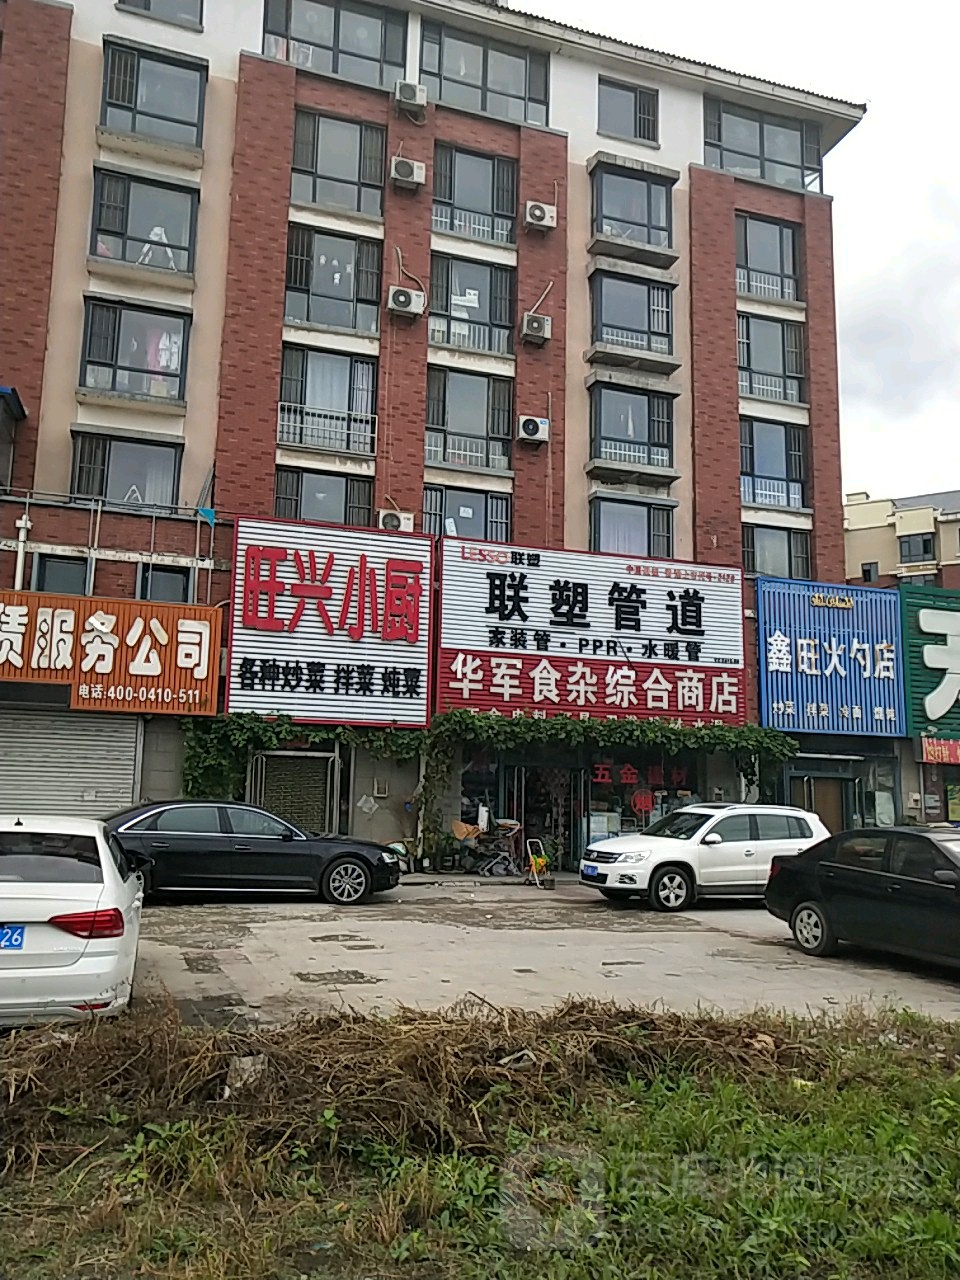 華軍食雜綜合商店